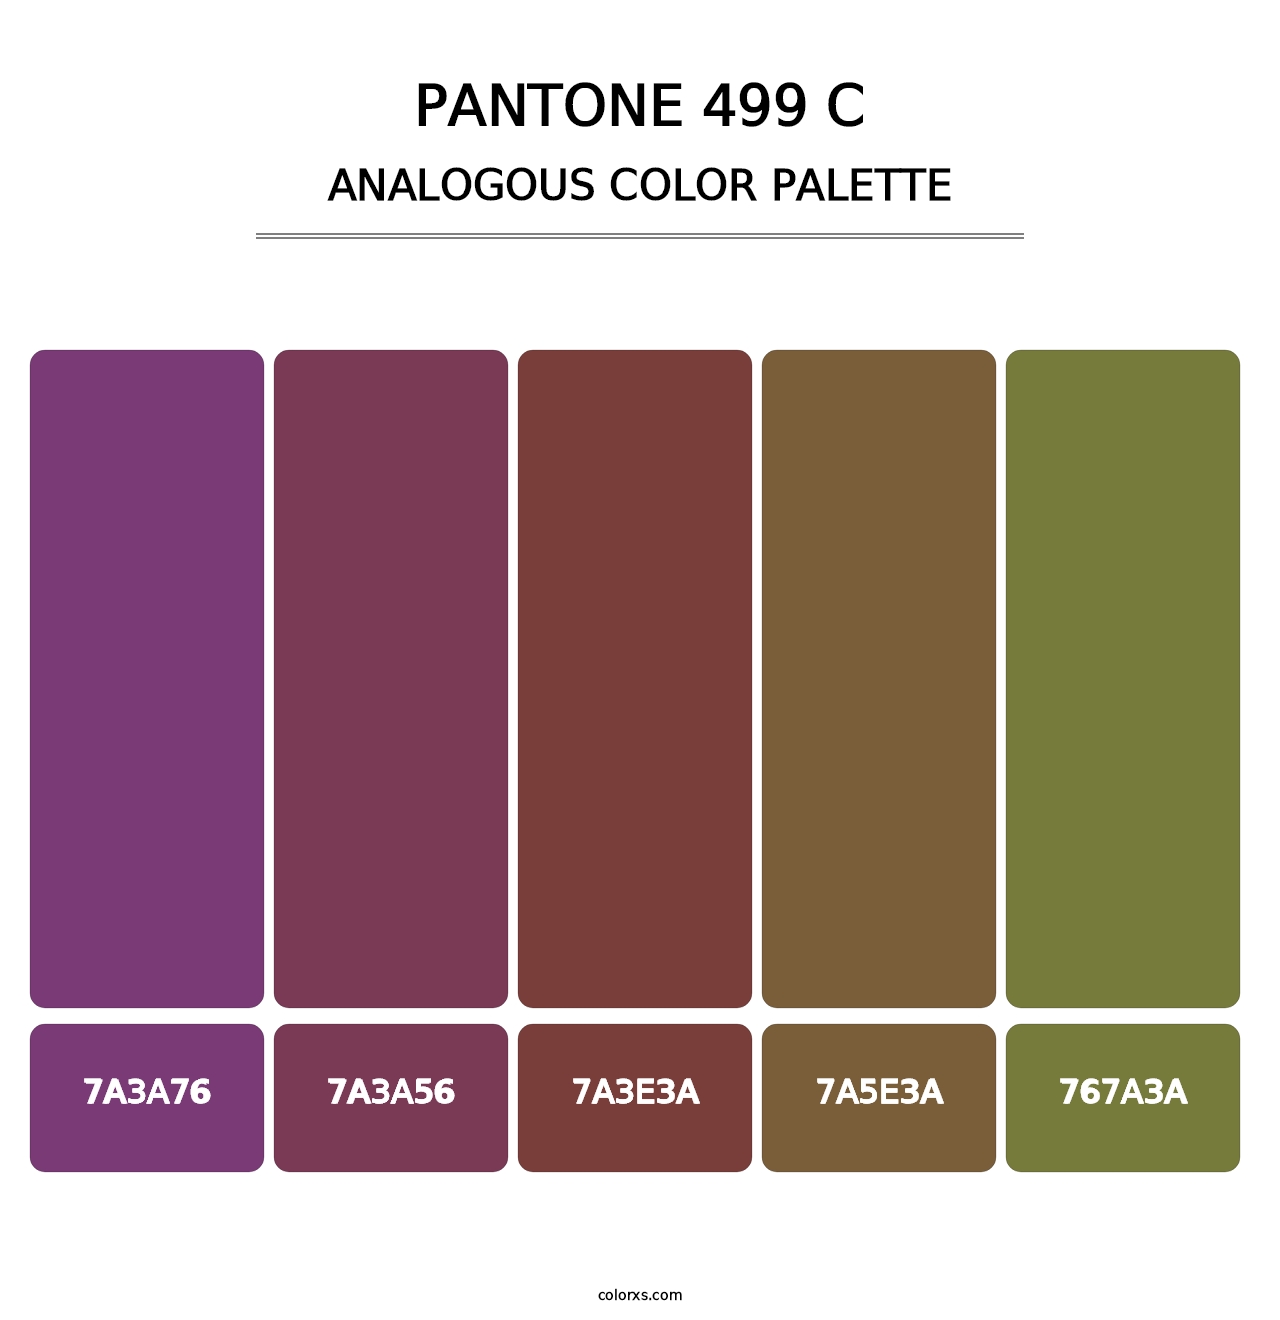 PANTONE 499 C - Analogous Color Palette